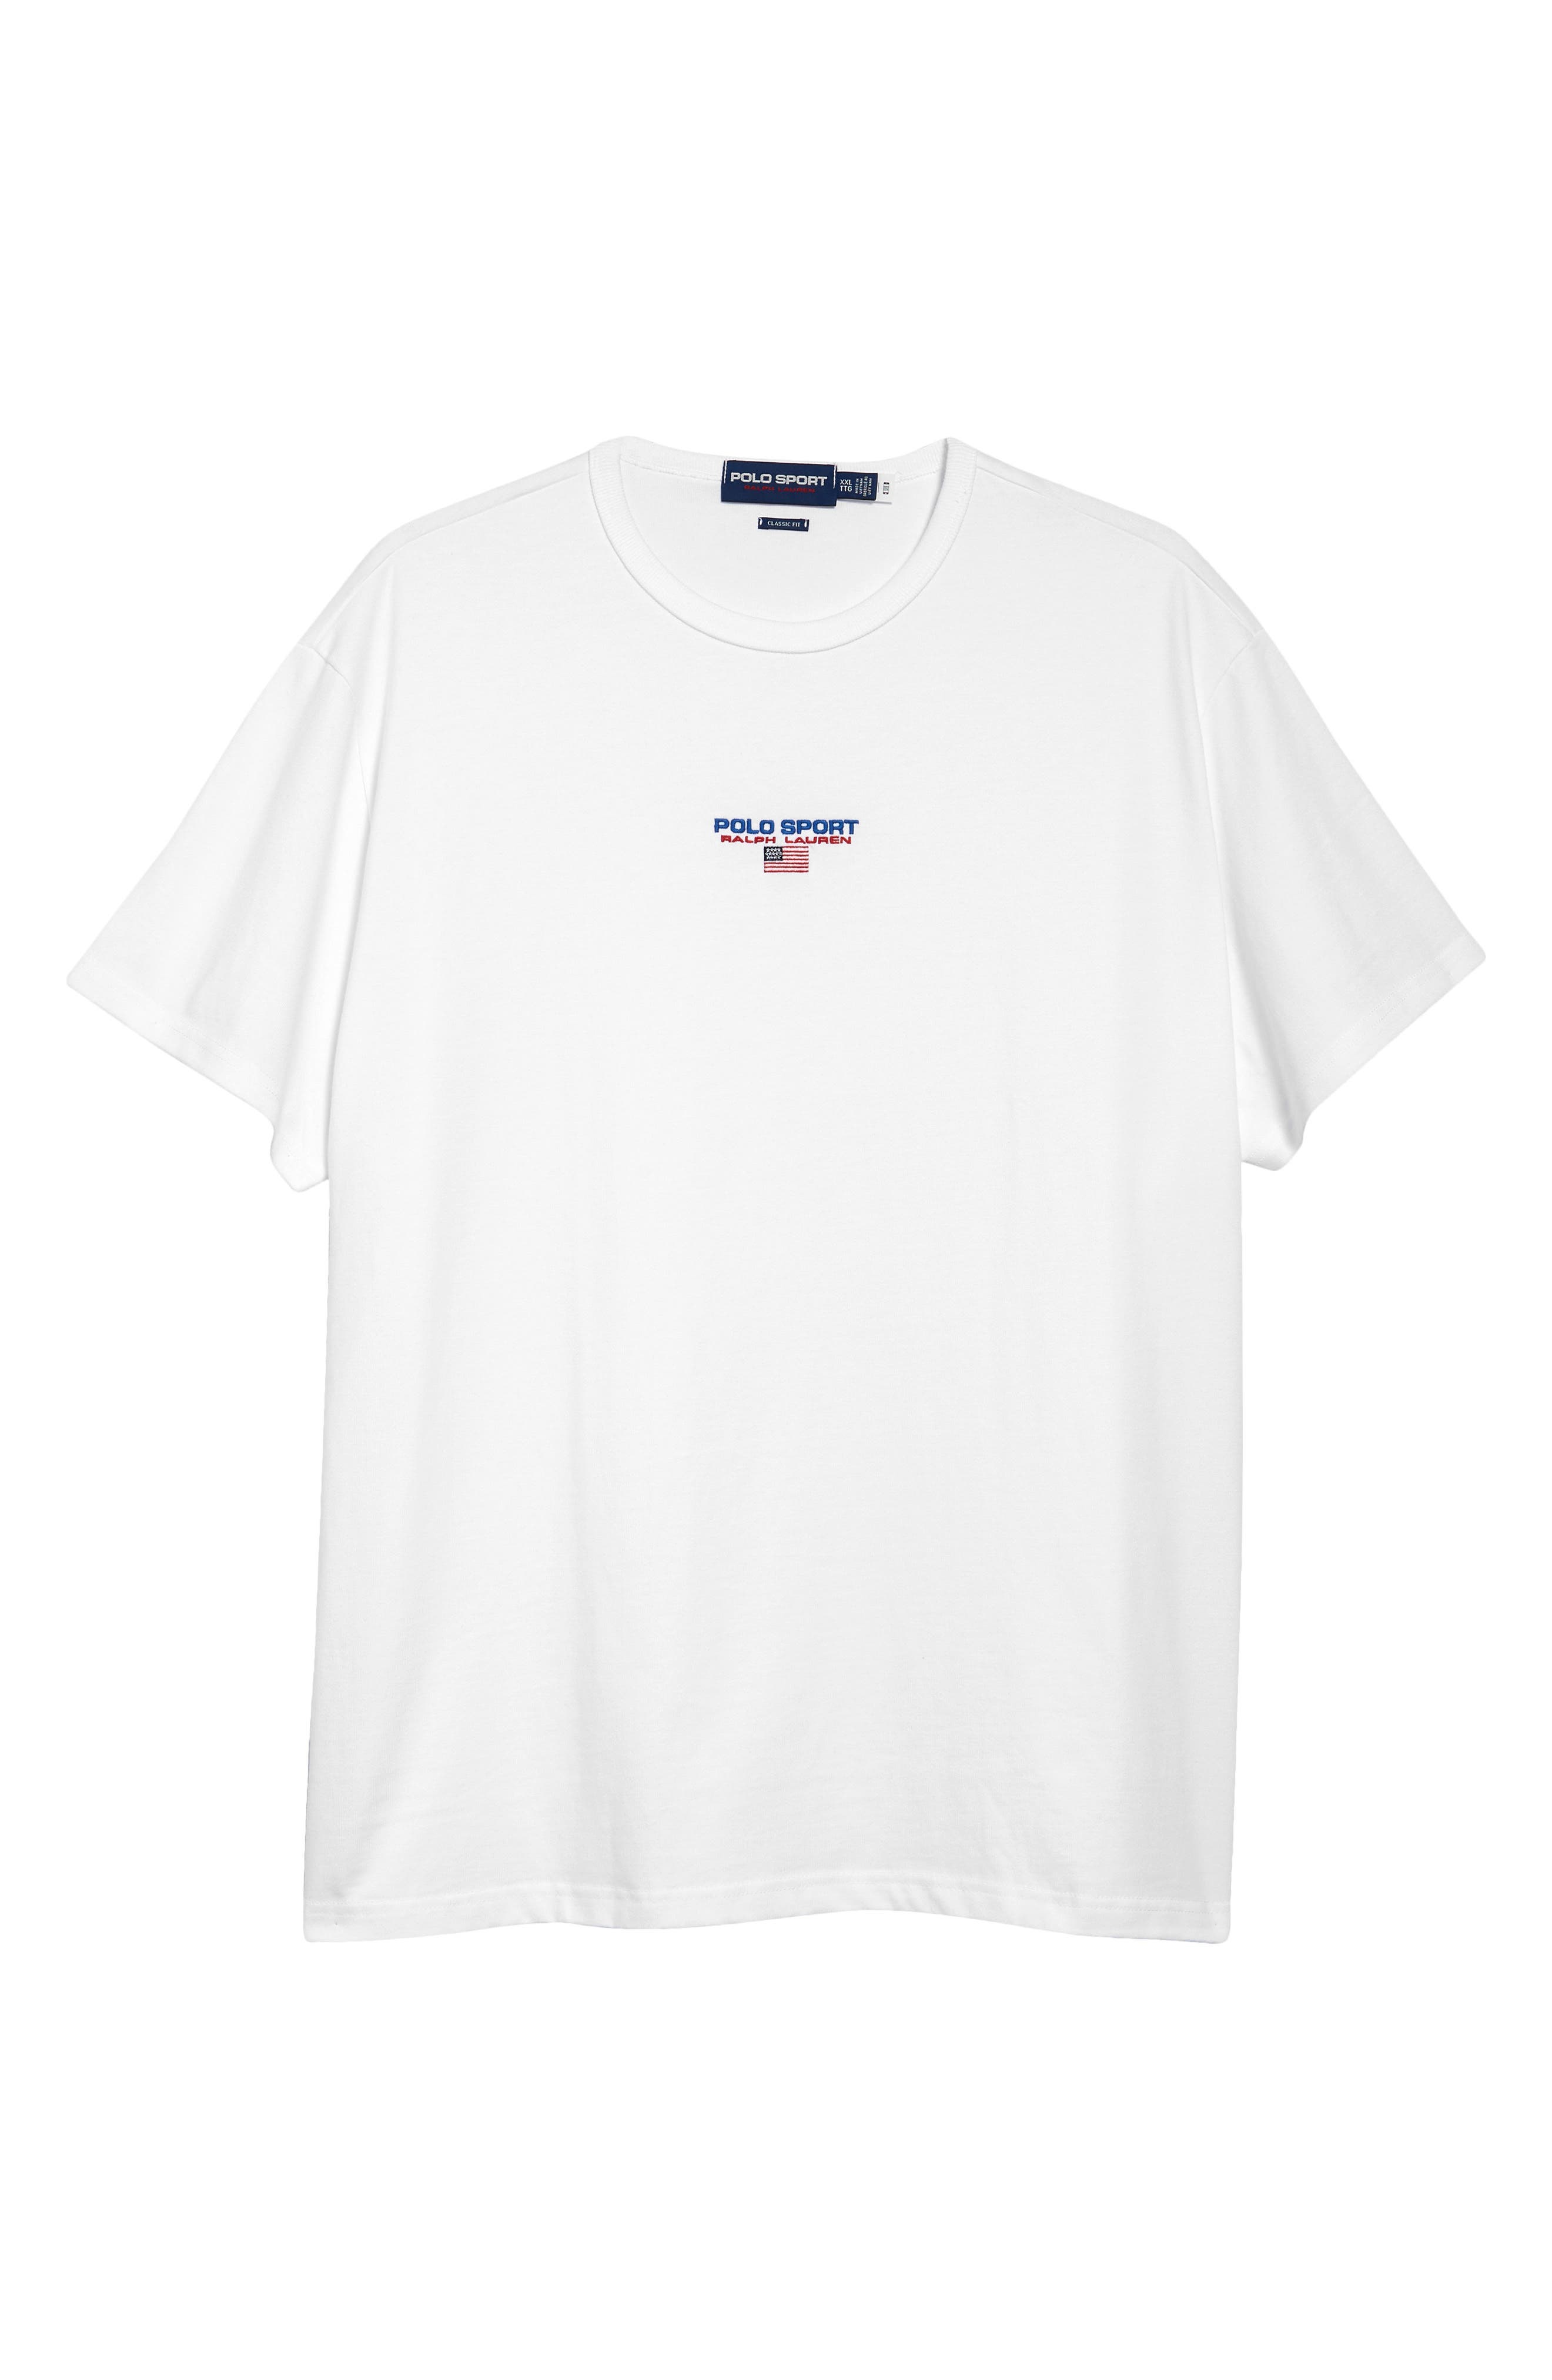 XL M L 100% Authentique Champion Script Logo Polo Top T-Shirt Rétro Vintage Homme S